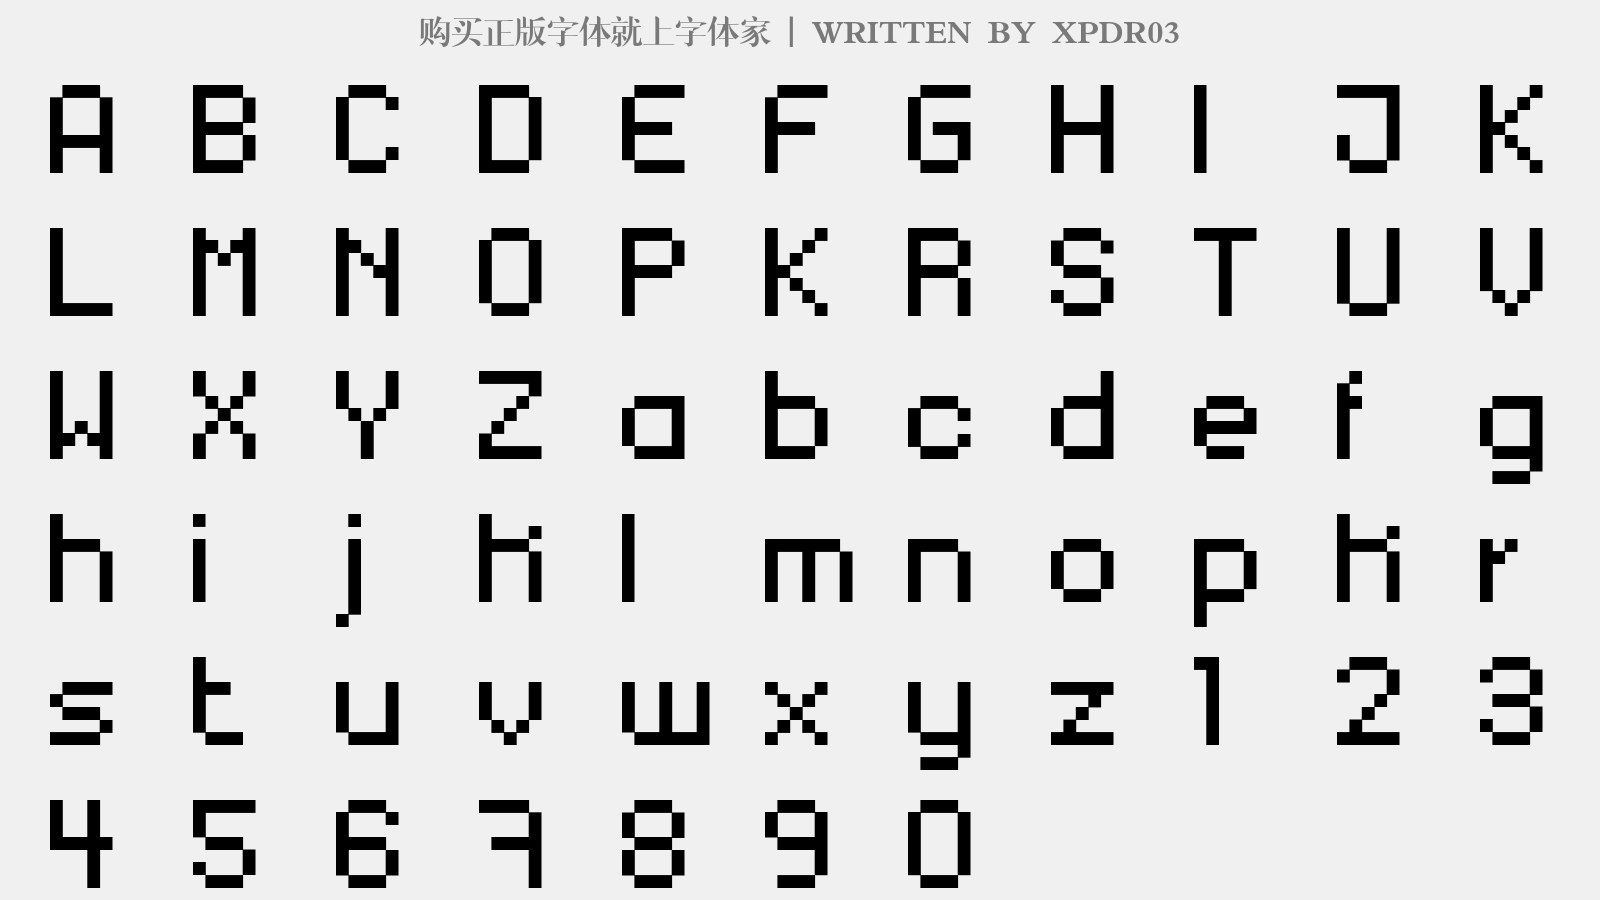 XPDR03 - 大写字母/小写字母/数字